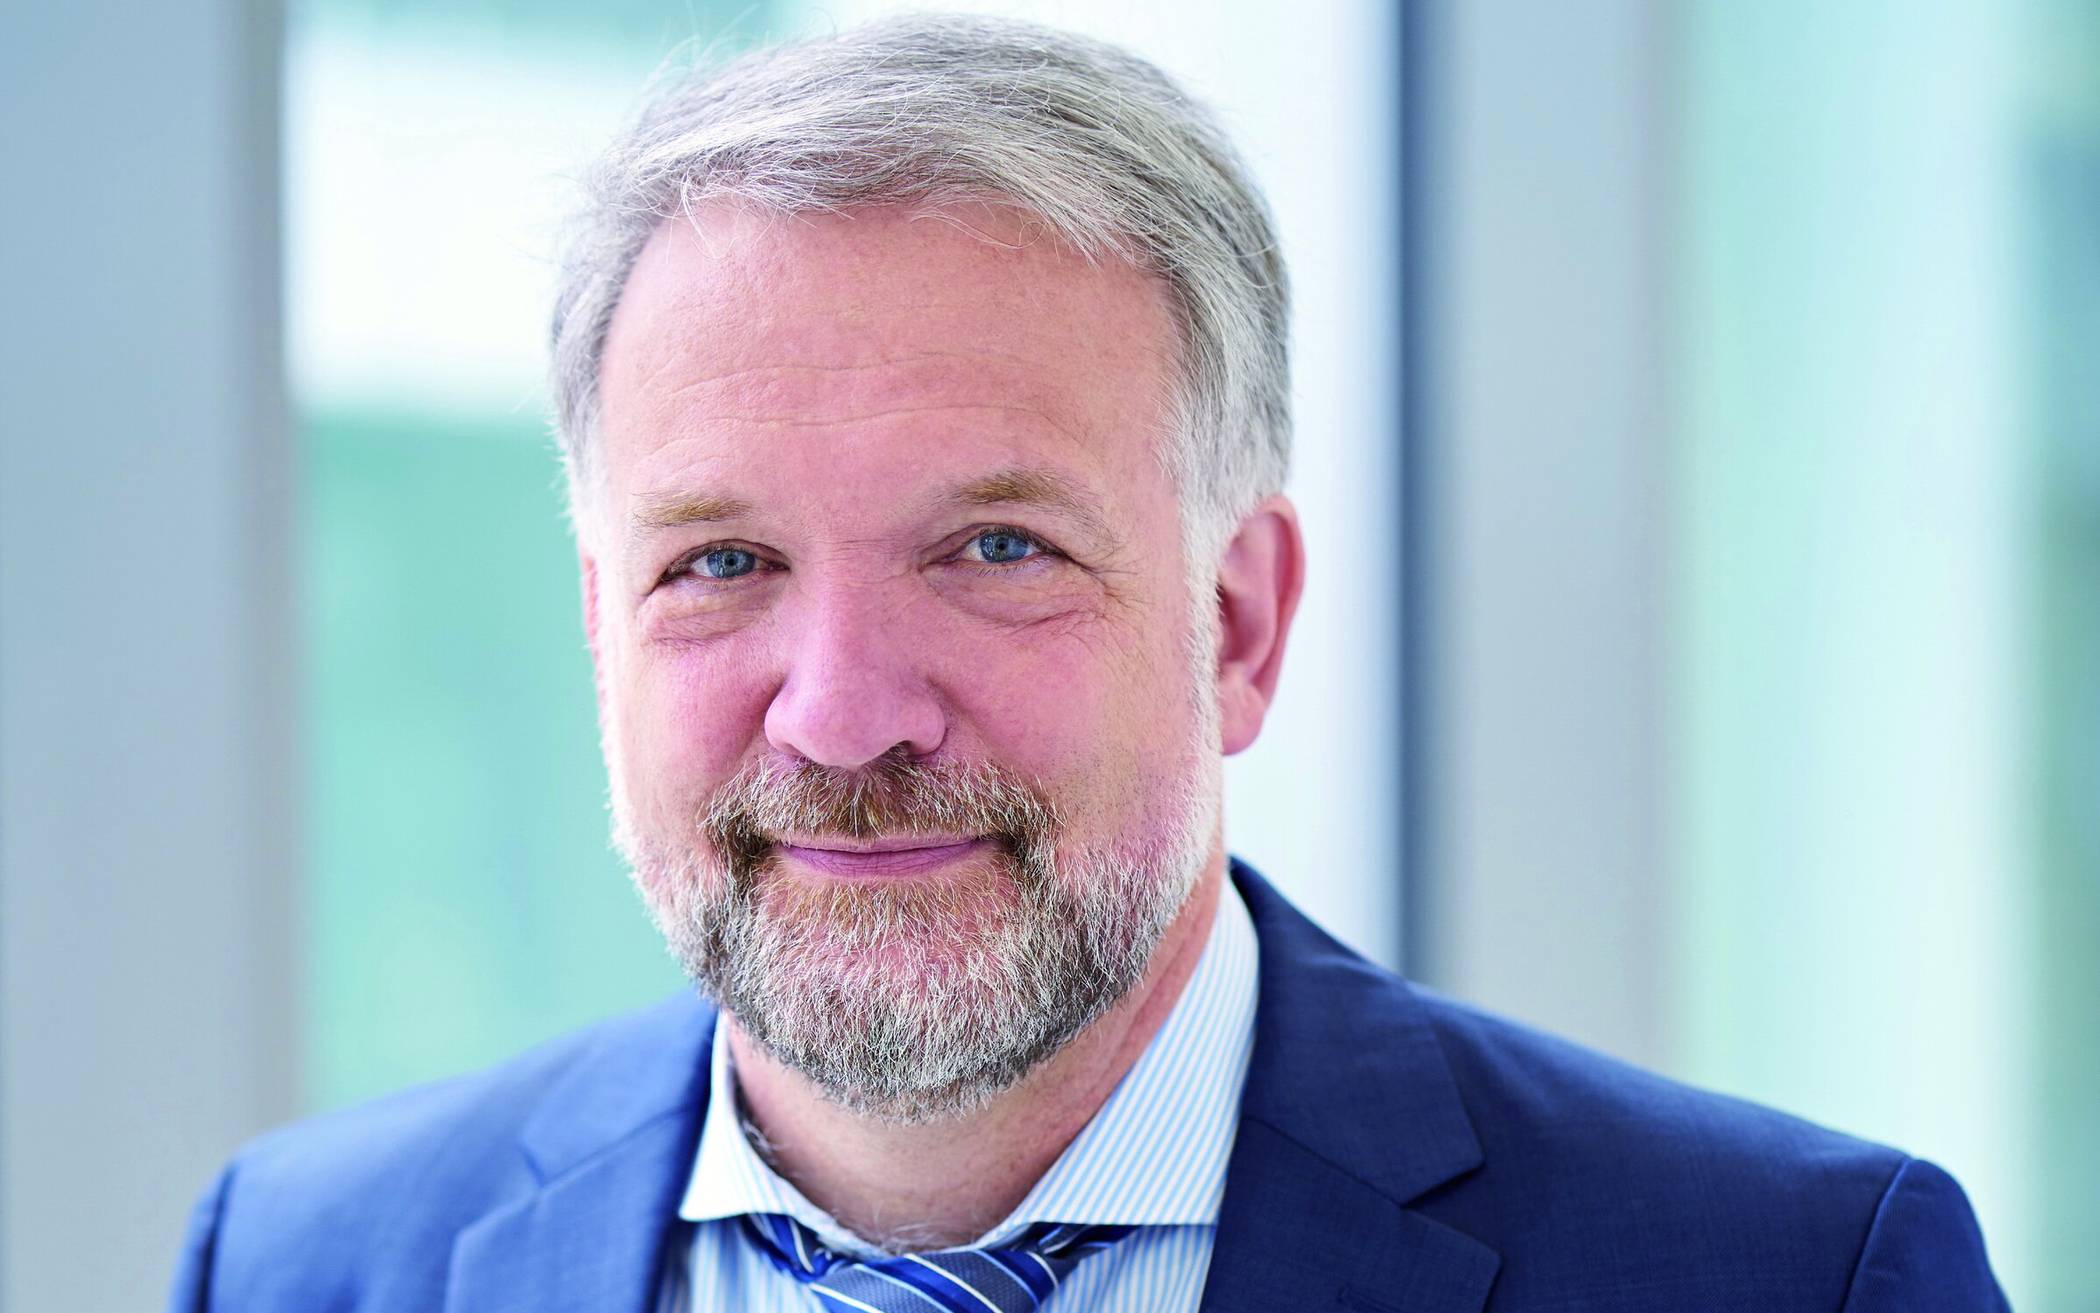  Prof. Dr. Andreas Frommer ist Prorektor für Studium und Lehre an der Bergischen Uni Wuppertal. 